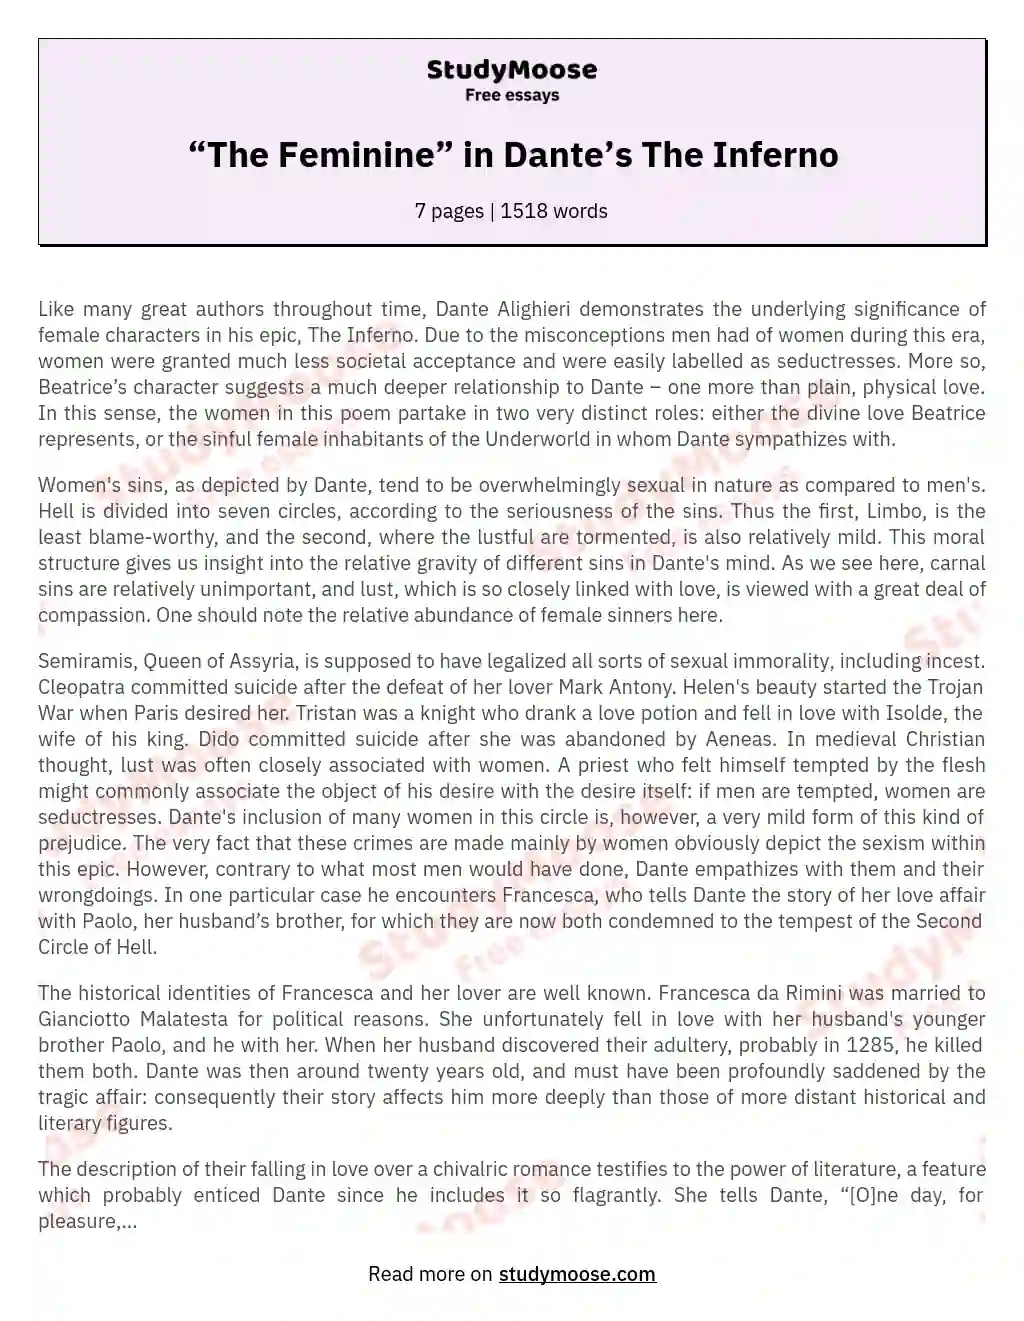 “The Feminine” in Dante’s The Inferno